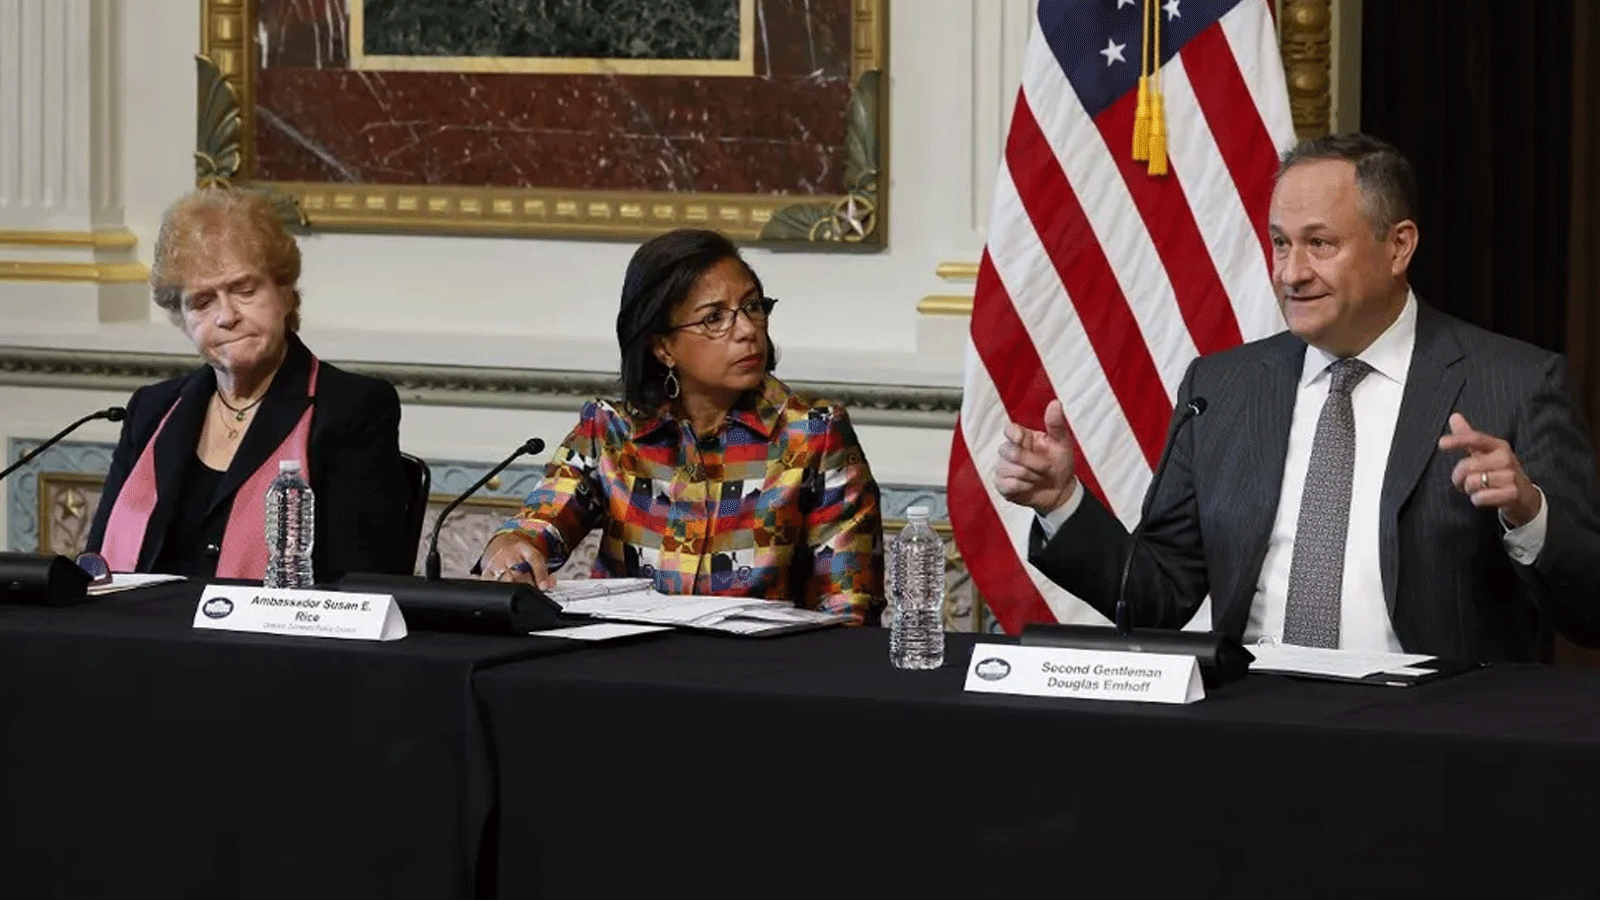 زوج كاملا هاريس نائبة الرئيس دوغلاس إمهوف (إلى اليمين) خلال مائدة مستديرة في مبنى المكتب التنفيذي في أيزنهاور في 7 كانون الاول\ ديسمبر 2022، في واشنطن العاصمة، الولايات المتحدة.